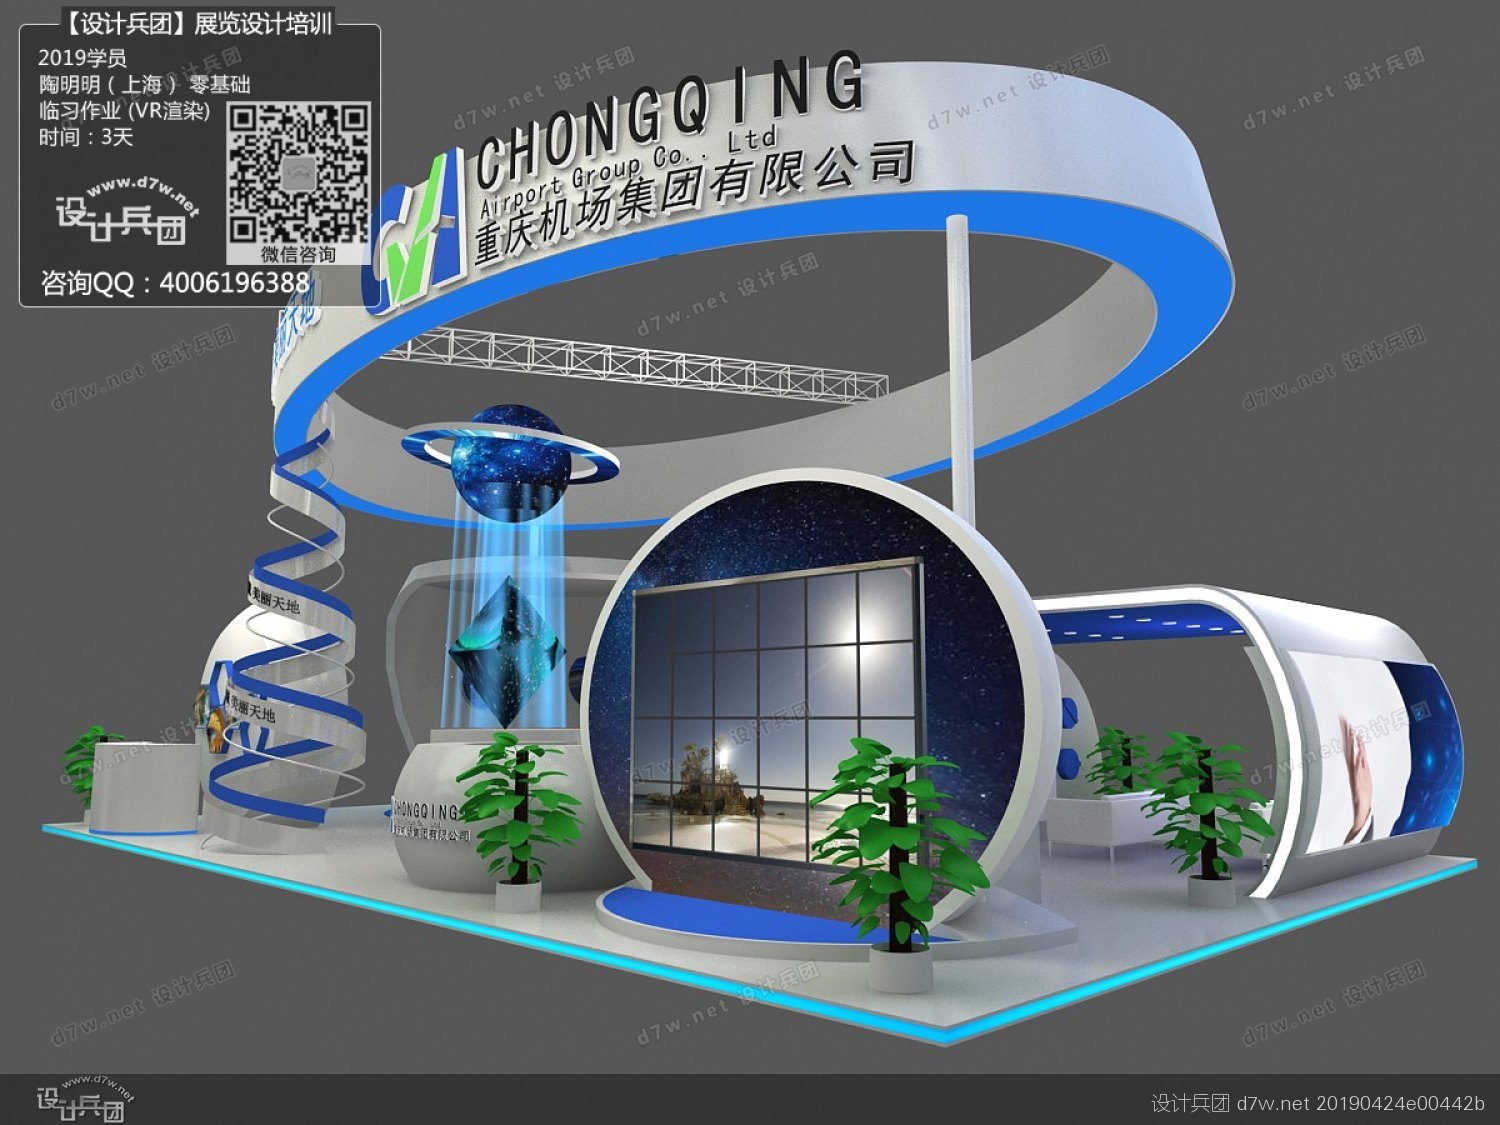 陶明明对重庆机场集团展台设计临习效果图